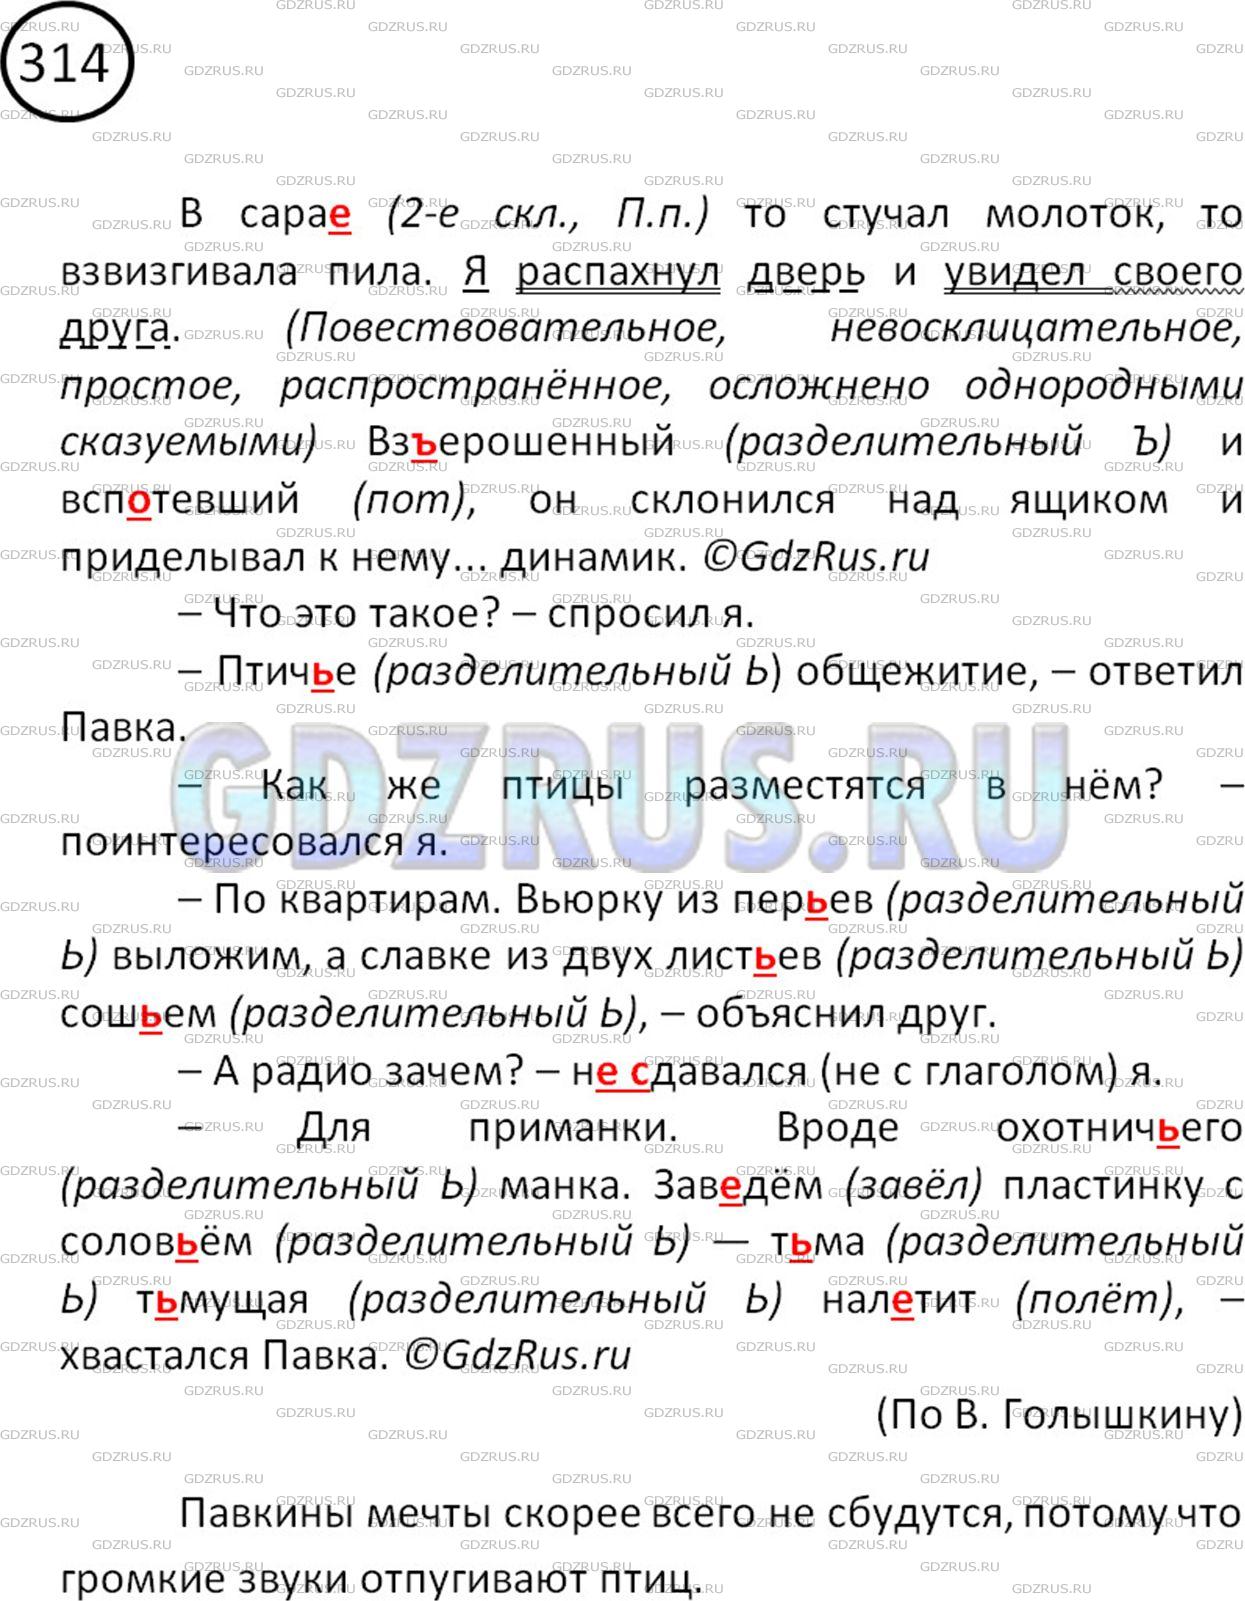 Фото решения 2: Номер №314 из ГДЗ по Русскому языку 5 класс: Ладыженская Т.А. 2012г.